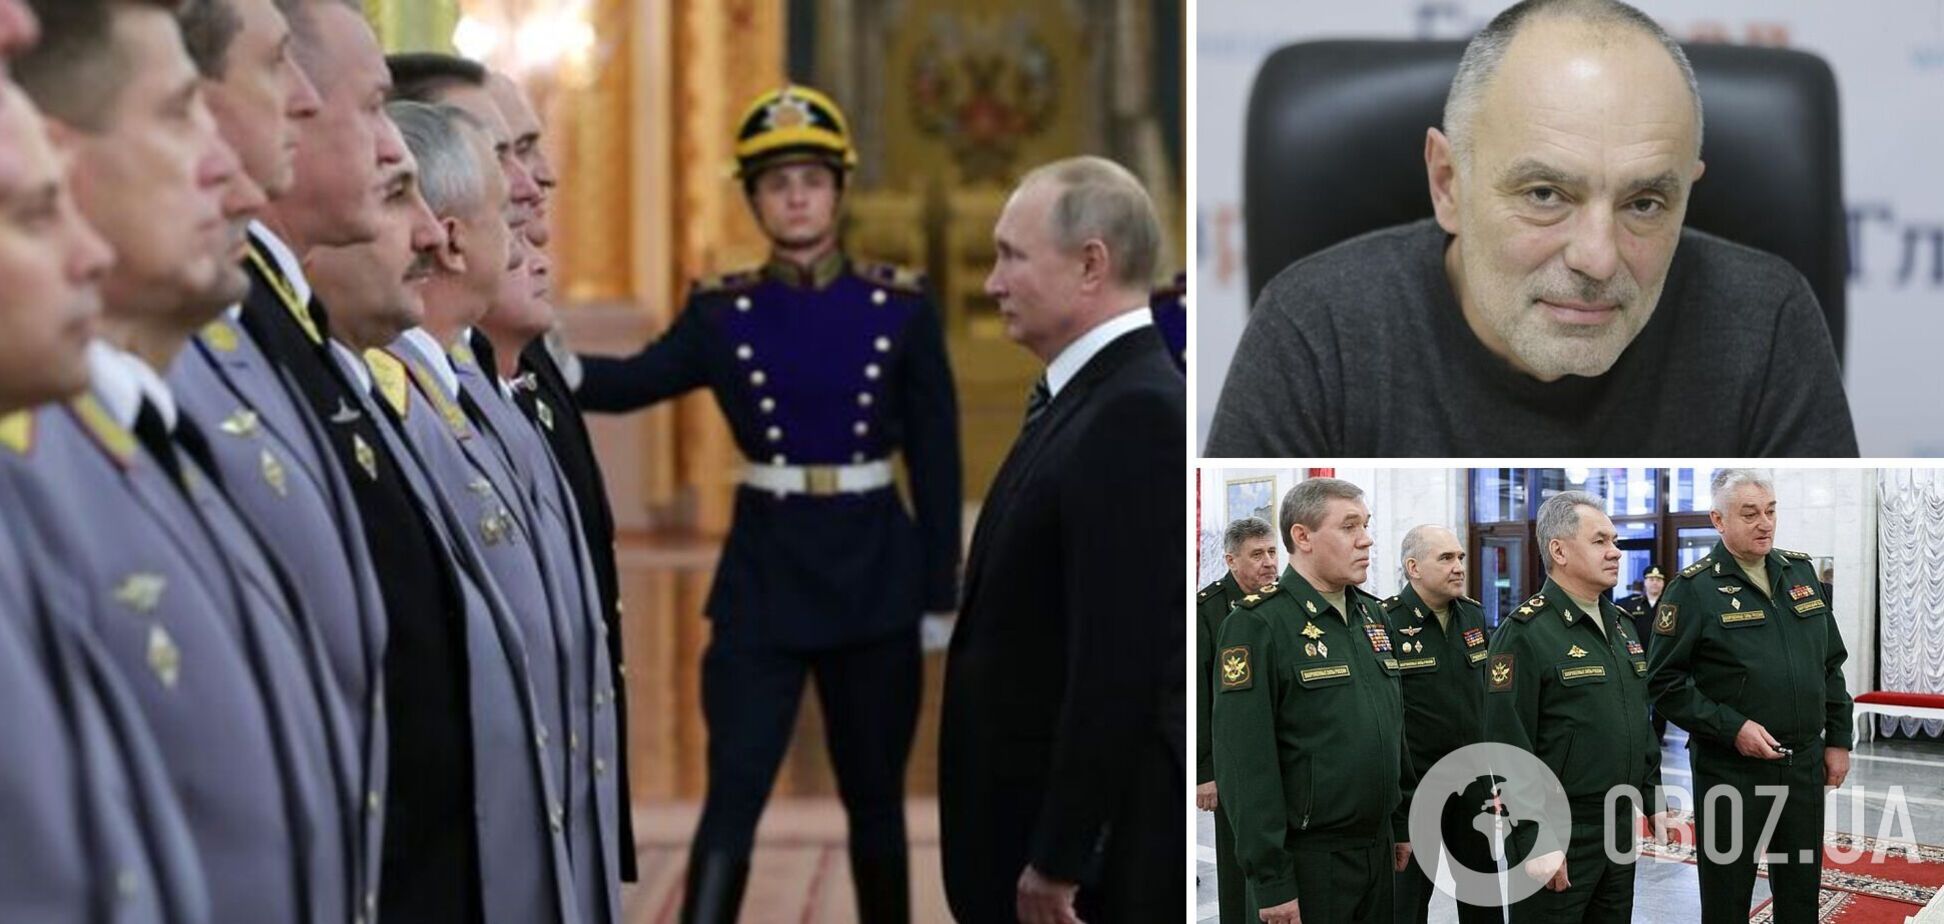 Касьянов: дохлых генералов Путина будет все больше, раненый Герасимов получил знак. Интервью